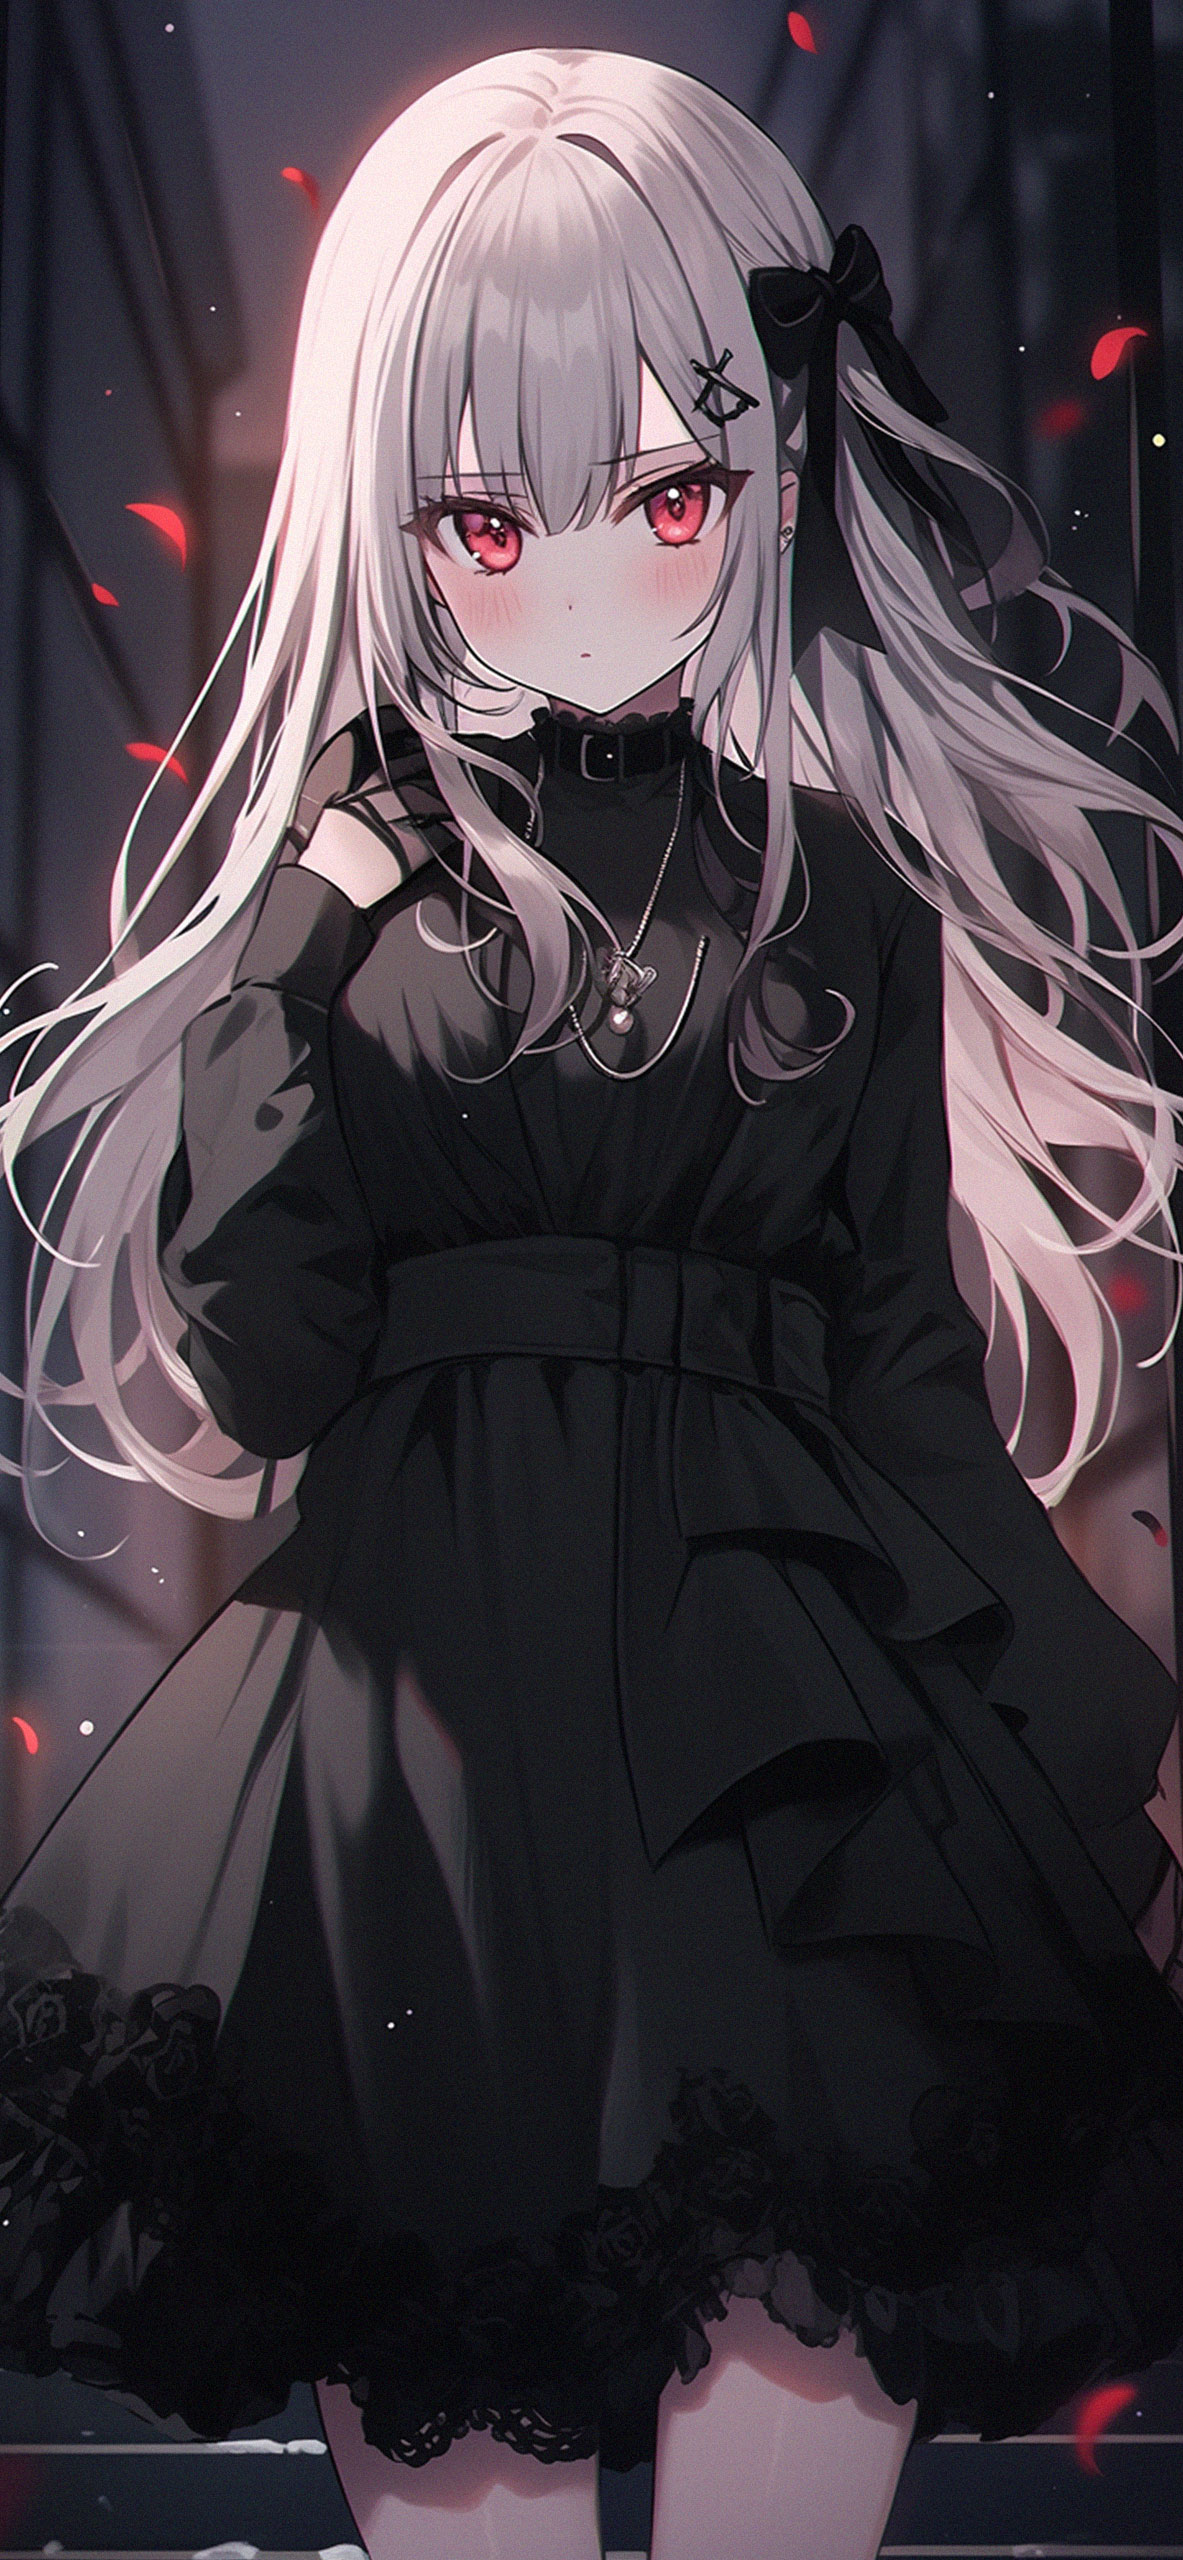 Cute Anime Girl in Black Dress Wallpaper Girl Wallpaper